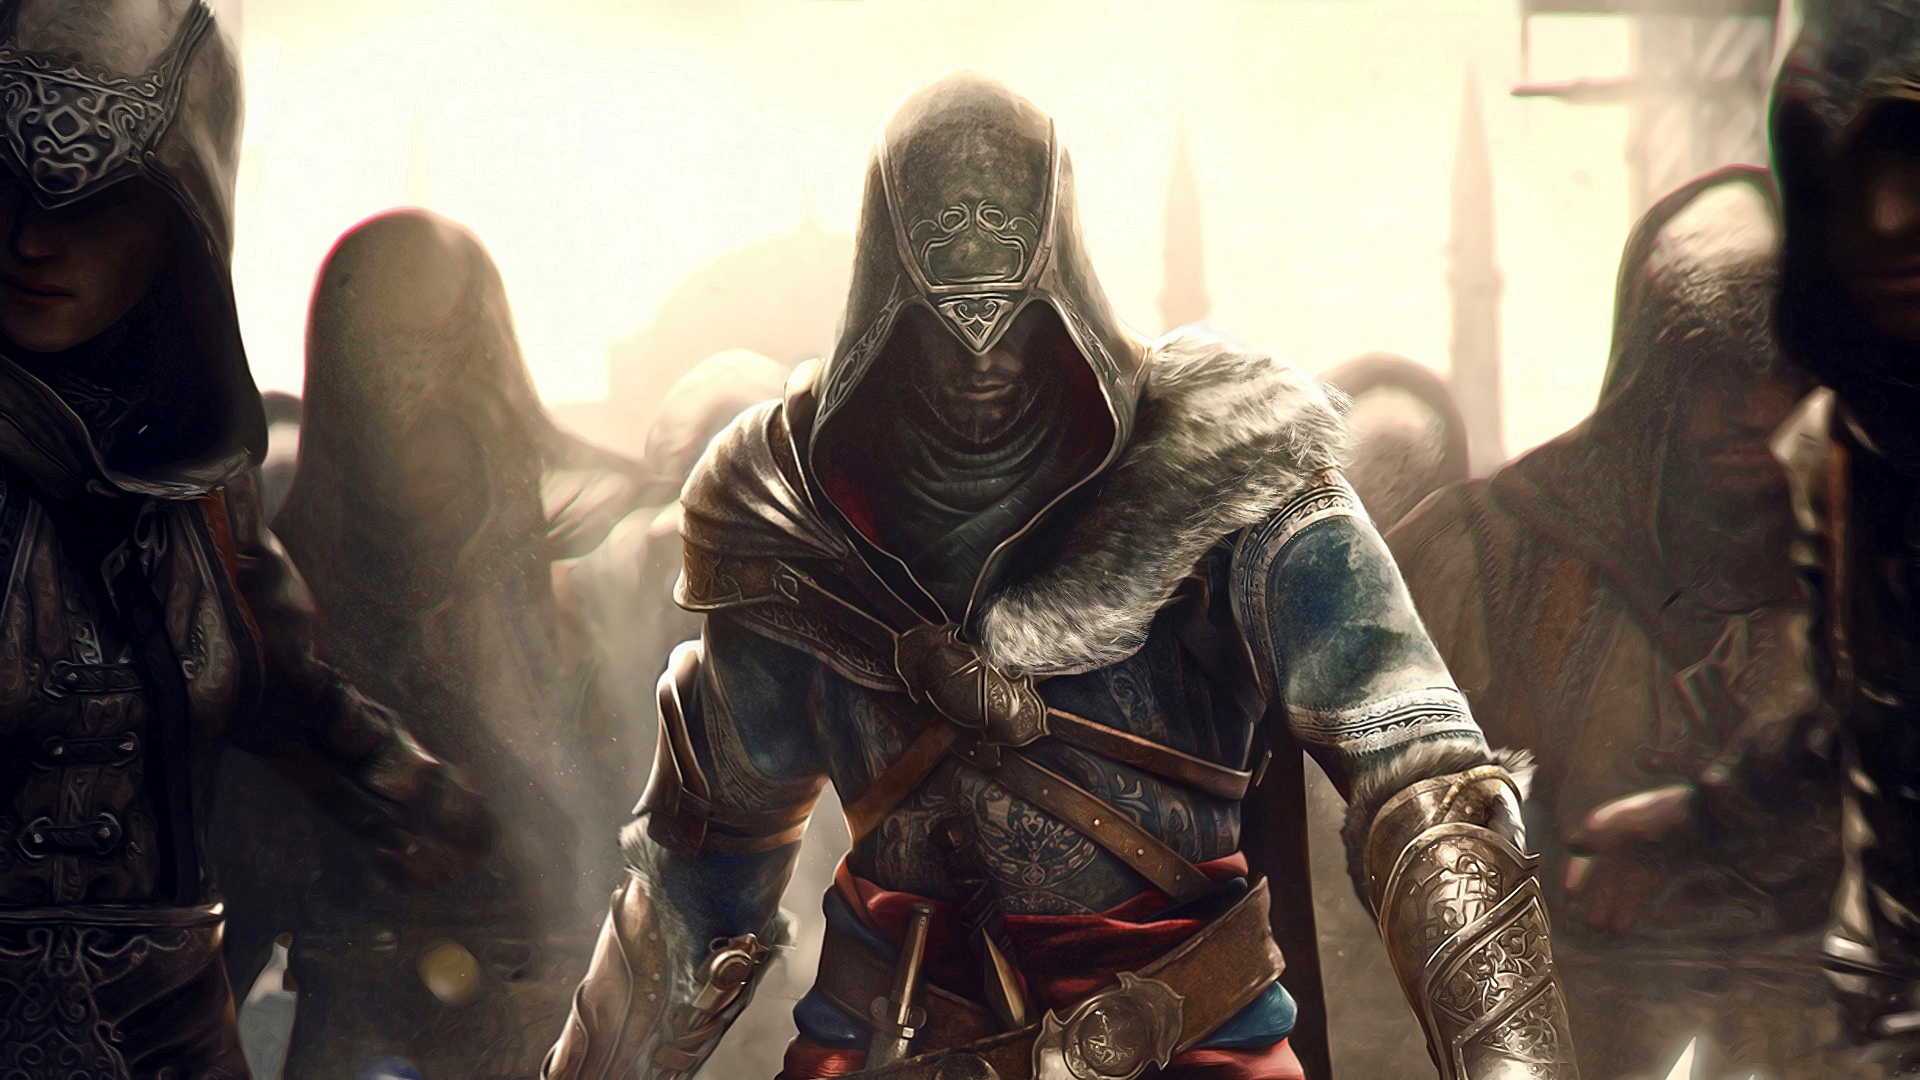 assassins creed brotherhood games wallpaper | Desktop Backgrounds ...